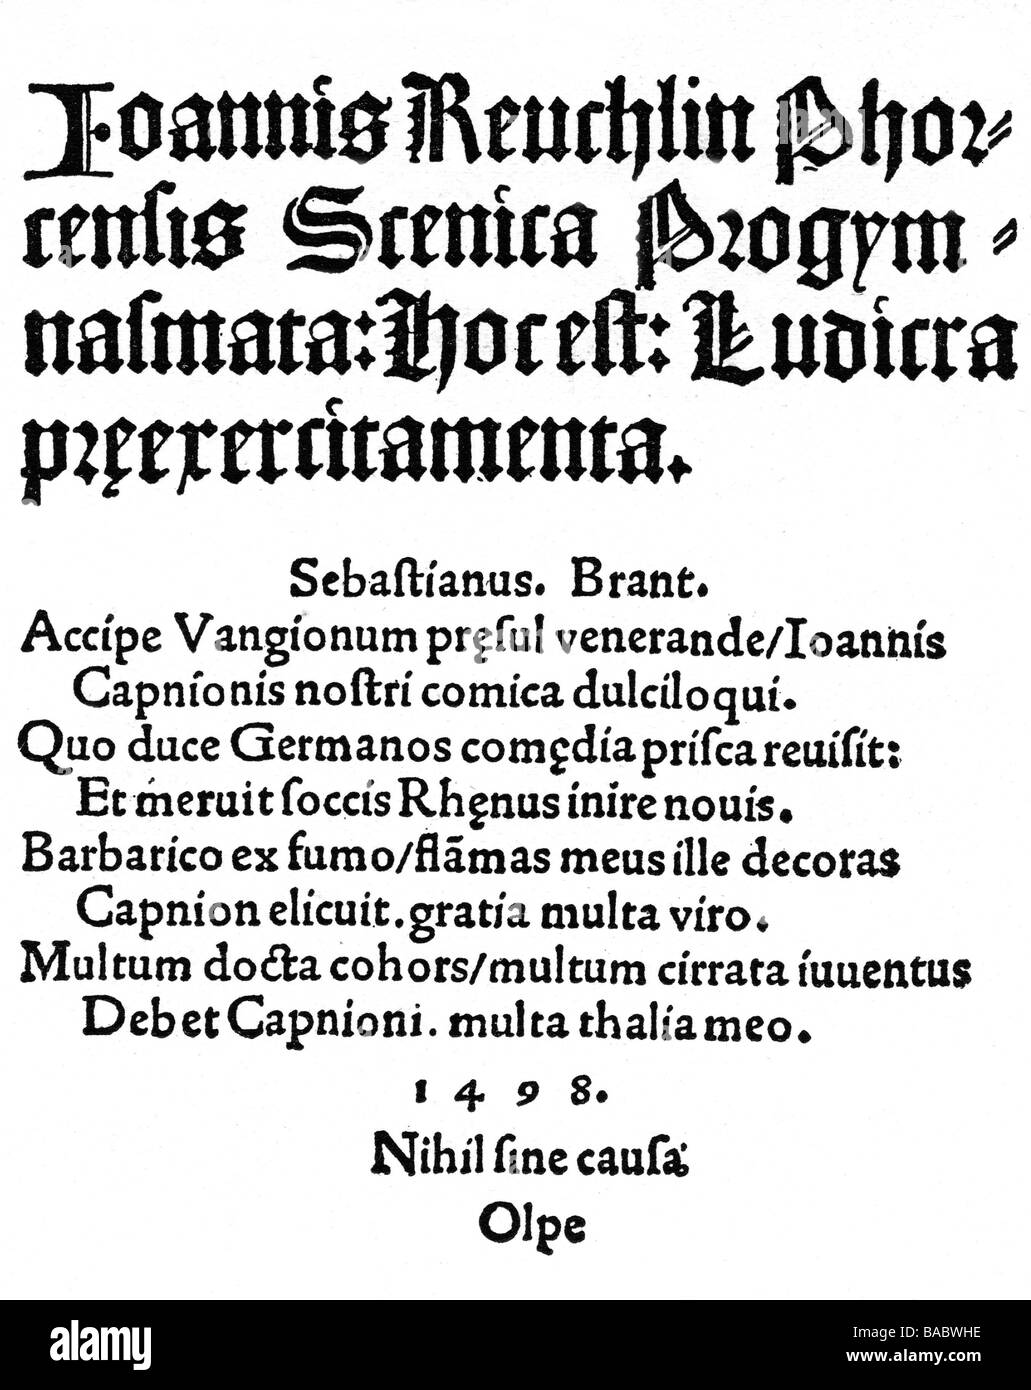 Reuchlin, Johann, 22.2.1455 - 30.6.1522, deutscher Humanist, Werke, 'Scenica Progymnasmata henno', gedruckt von Johann Bergmann von Ople, Basel, 1498, Stockfoto